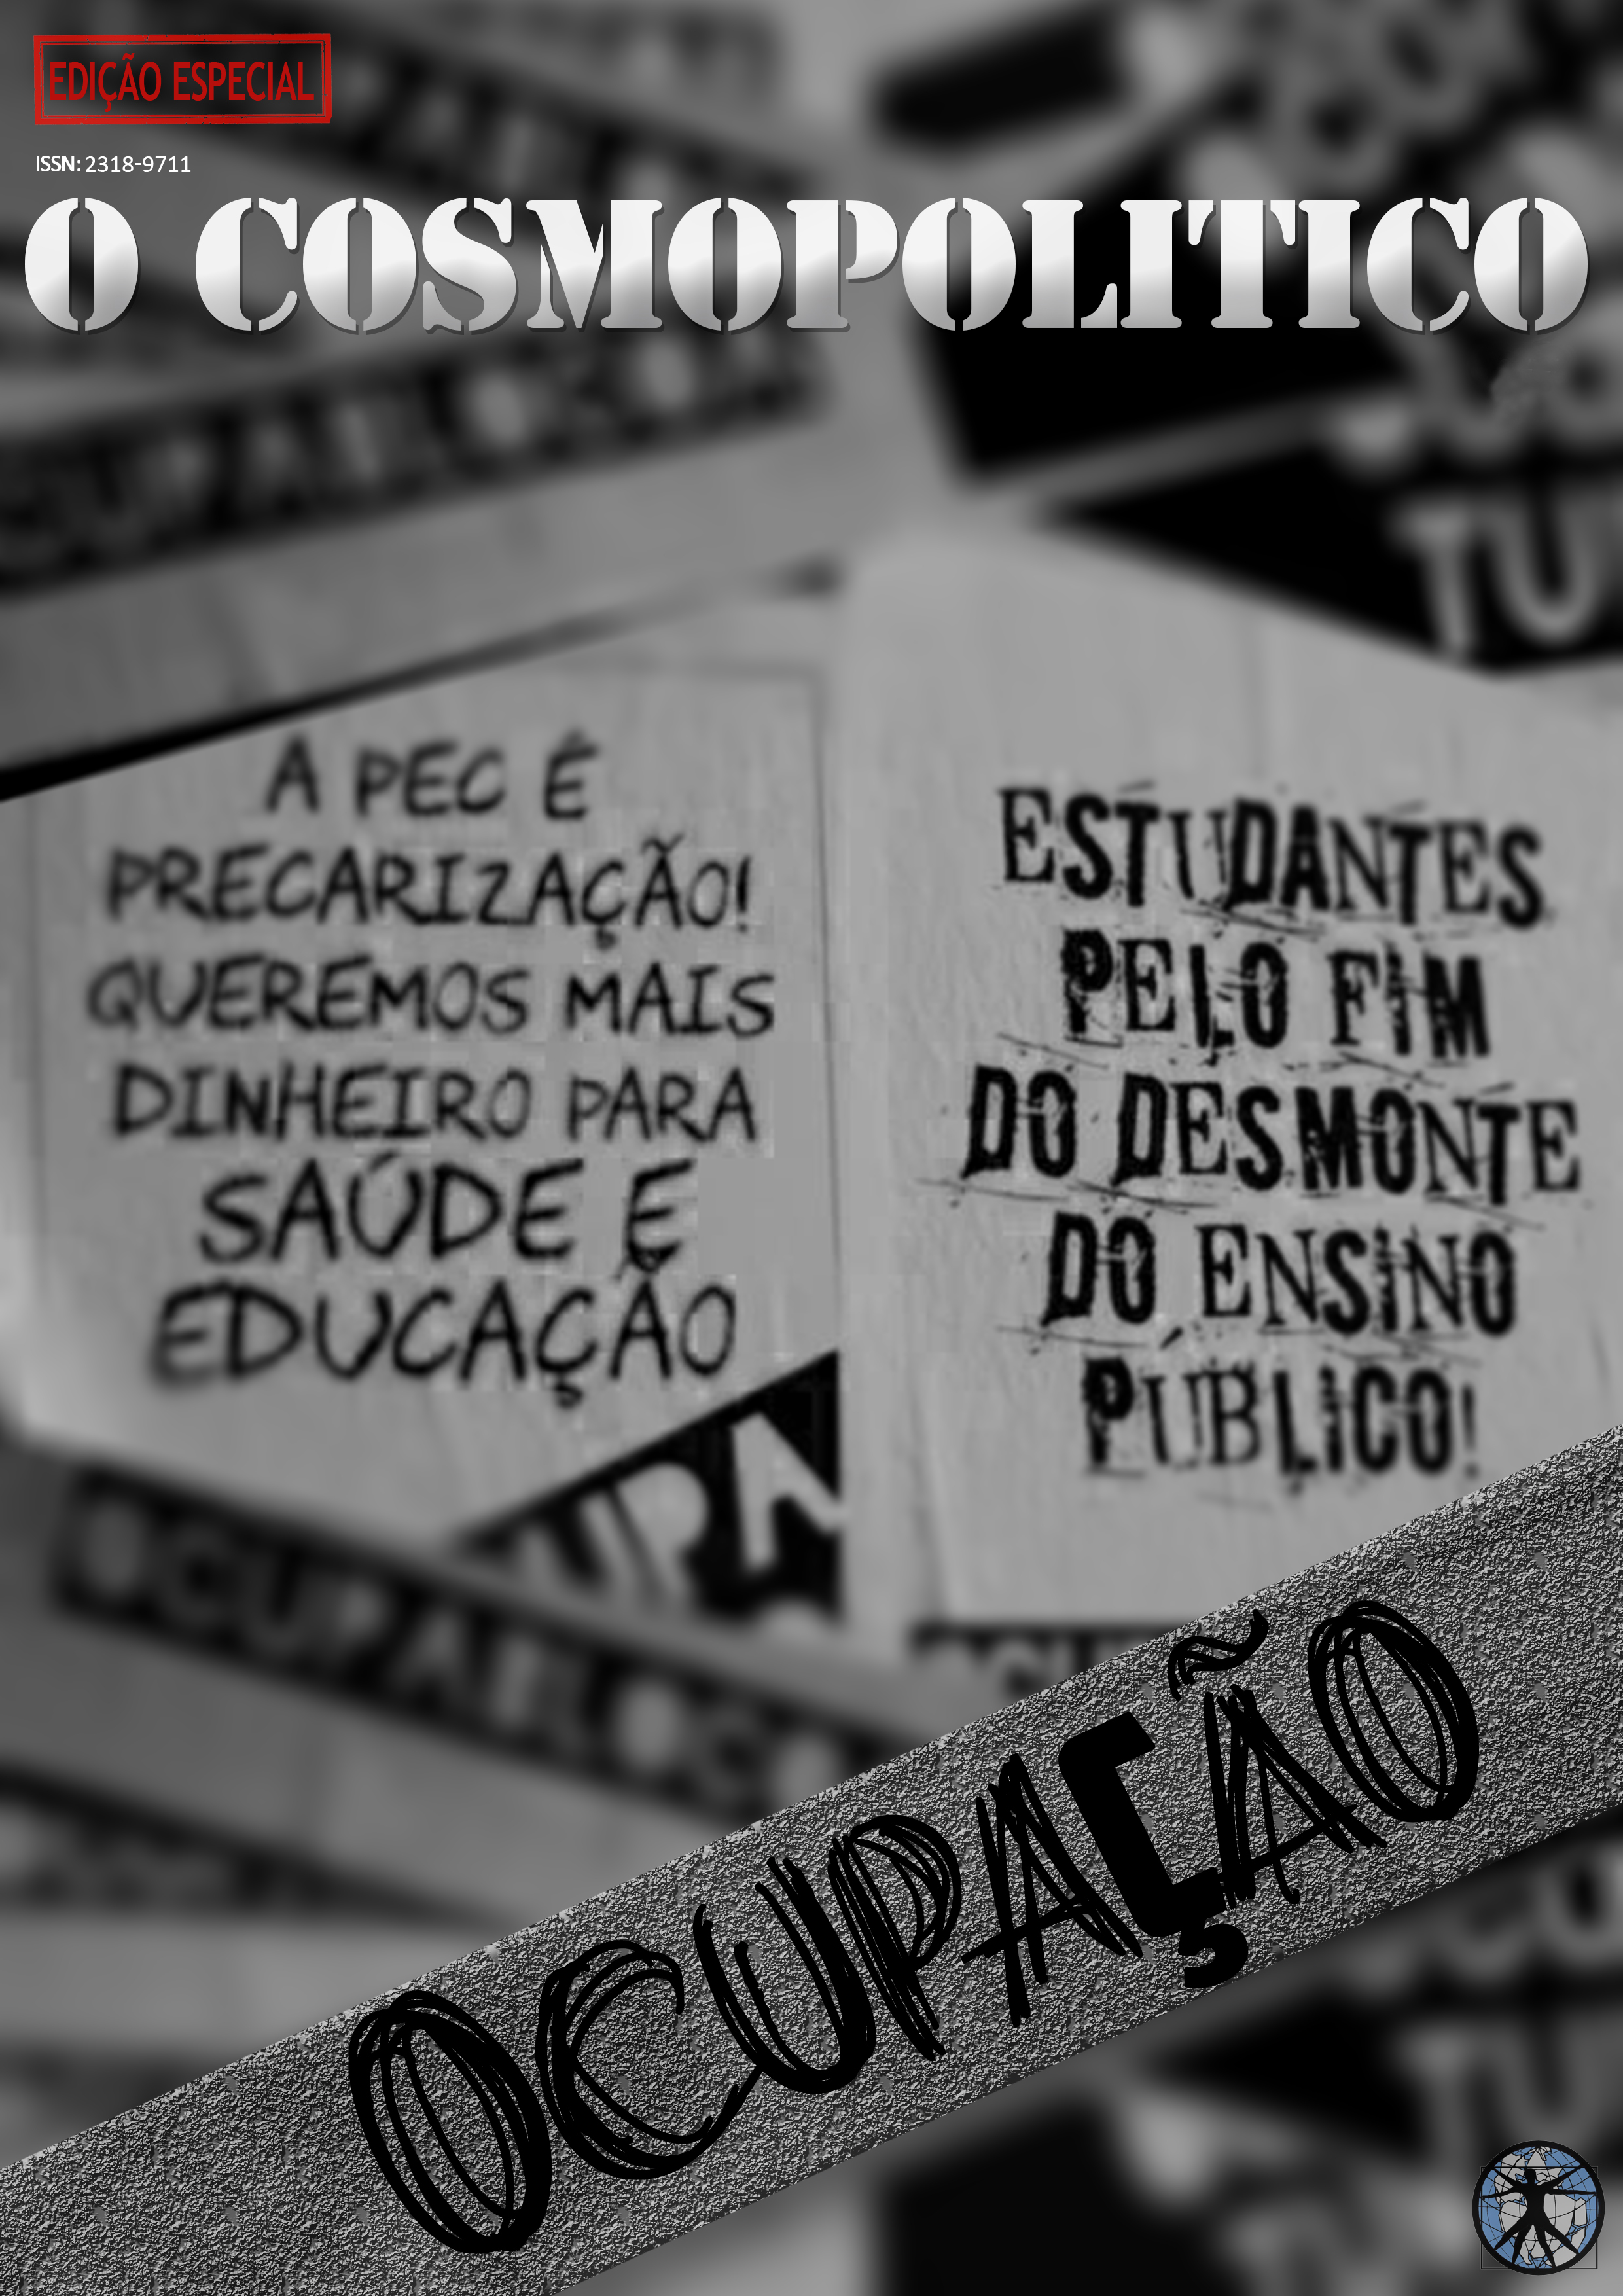 Imagem de capa: Cartazes com dizeres: "A PEC é precarização! Queremos mais dinheiro para saúde e educação", "Estudantes pelo fim do desmonte público!" e "Ocupação".